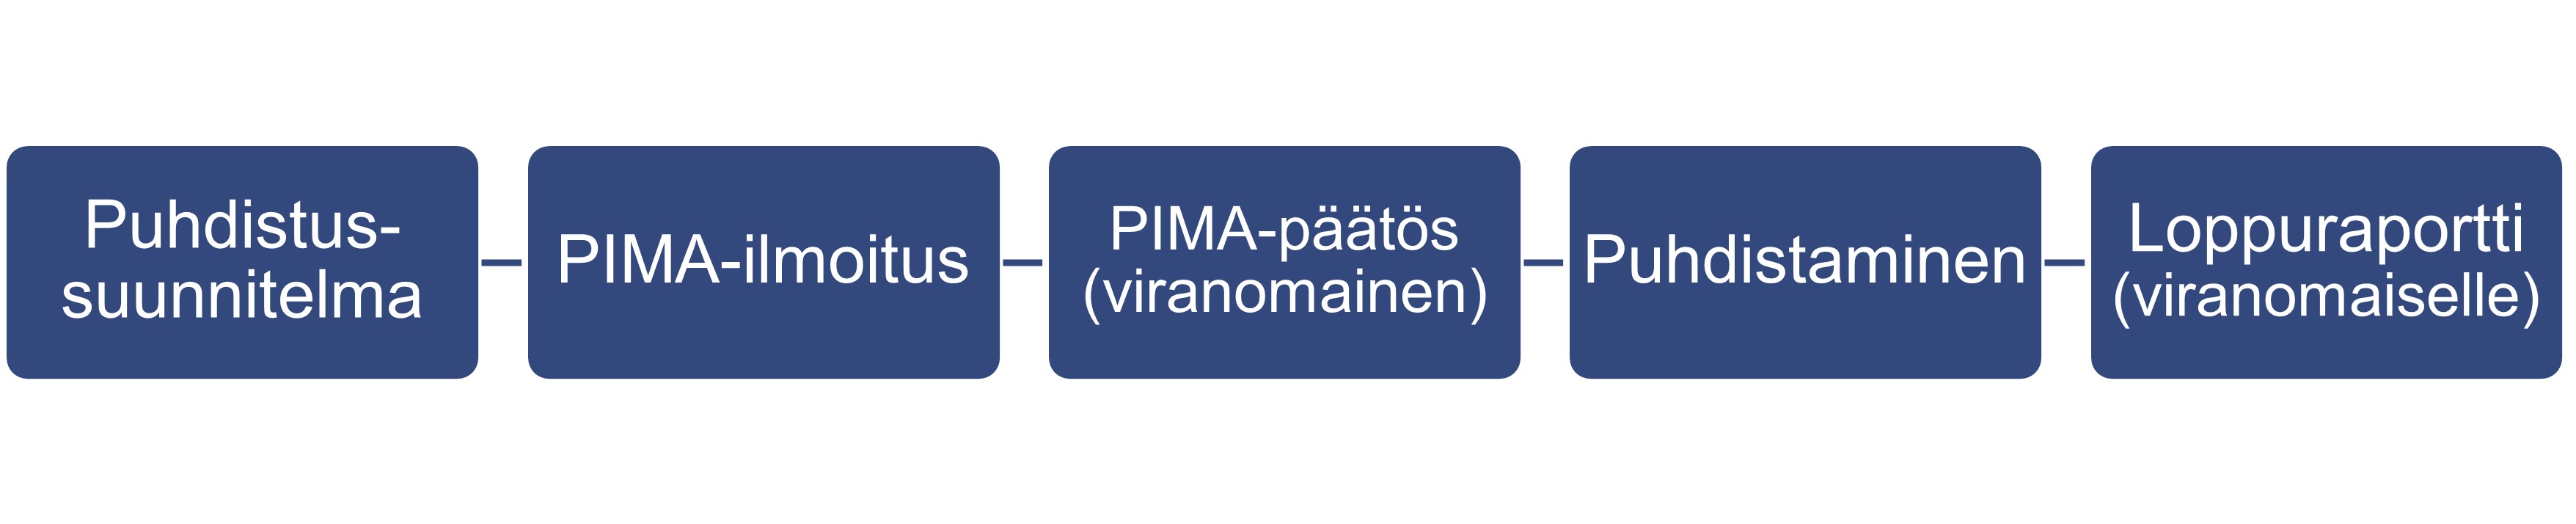 Puhdistussuunnitelma > PIMA-ilmoitus > PIMA-päätös (viranomainen) > Puhdistaminen > Loppuraportti (viranomaiselle)